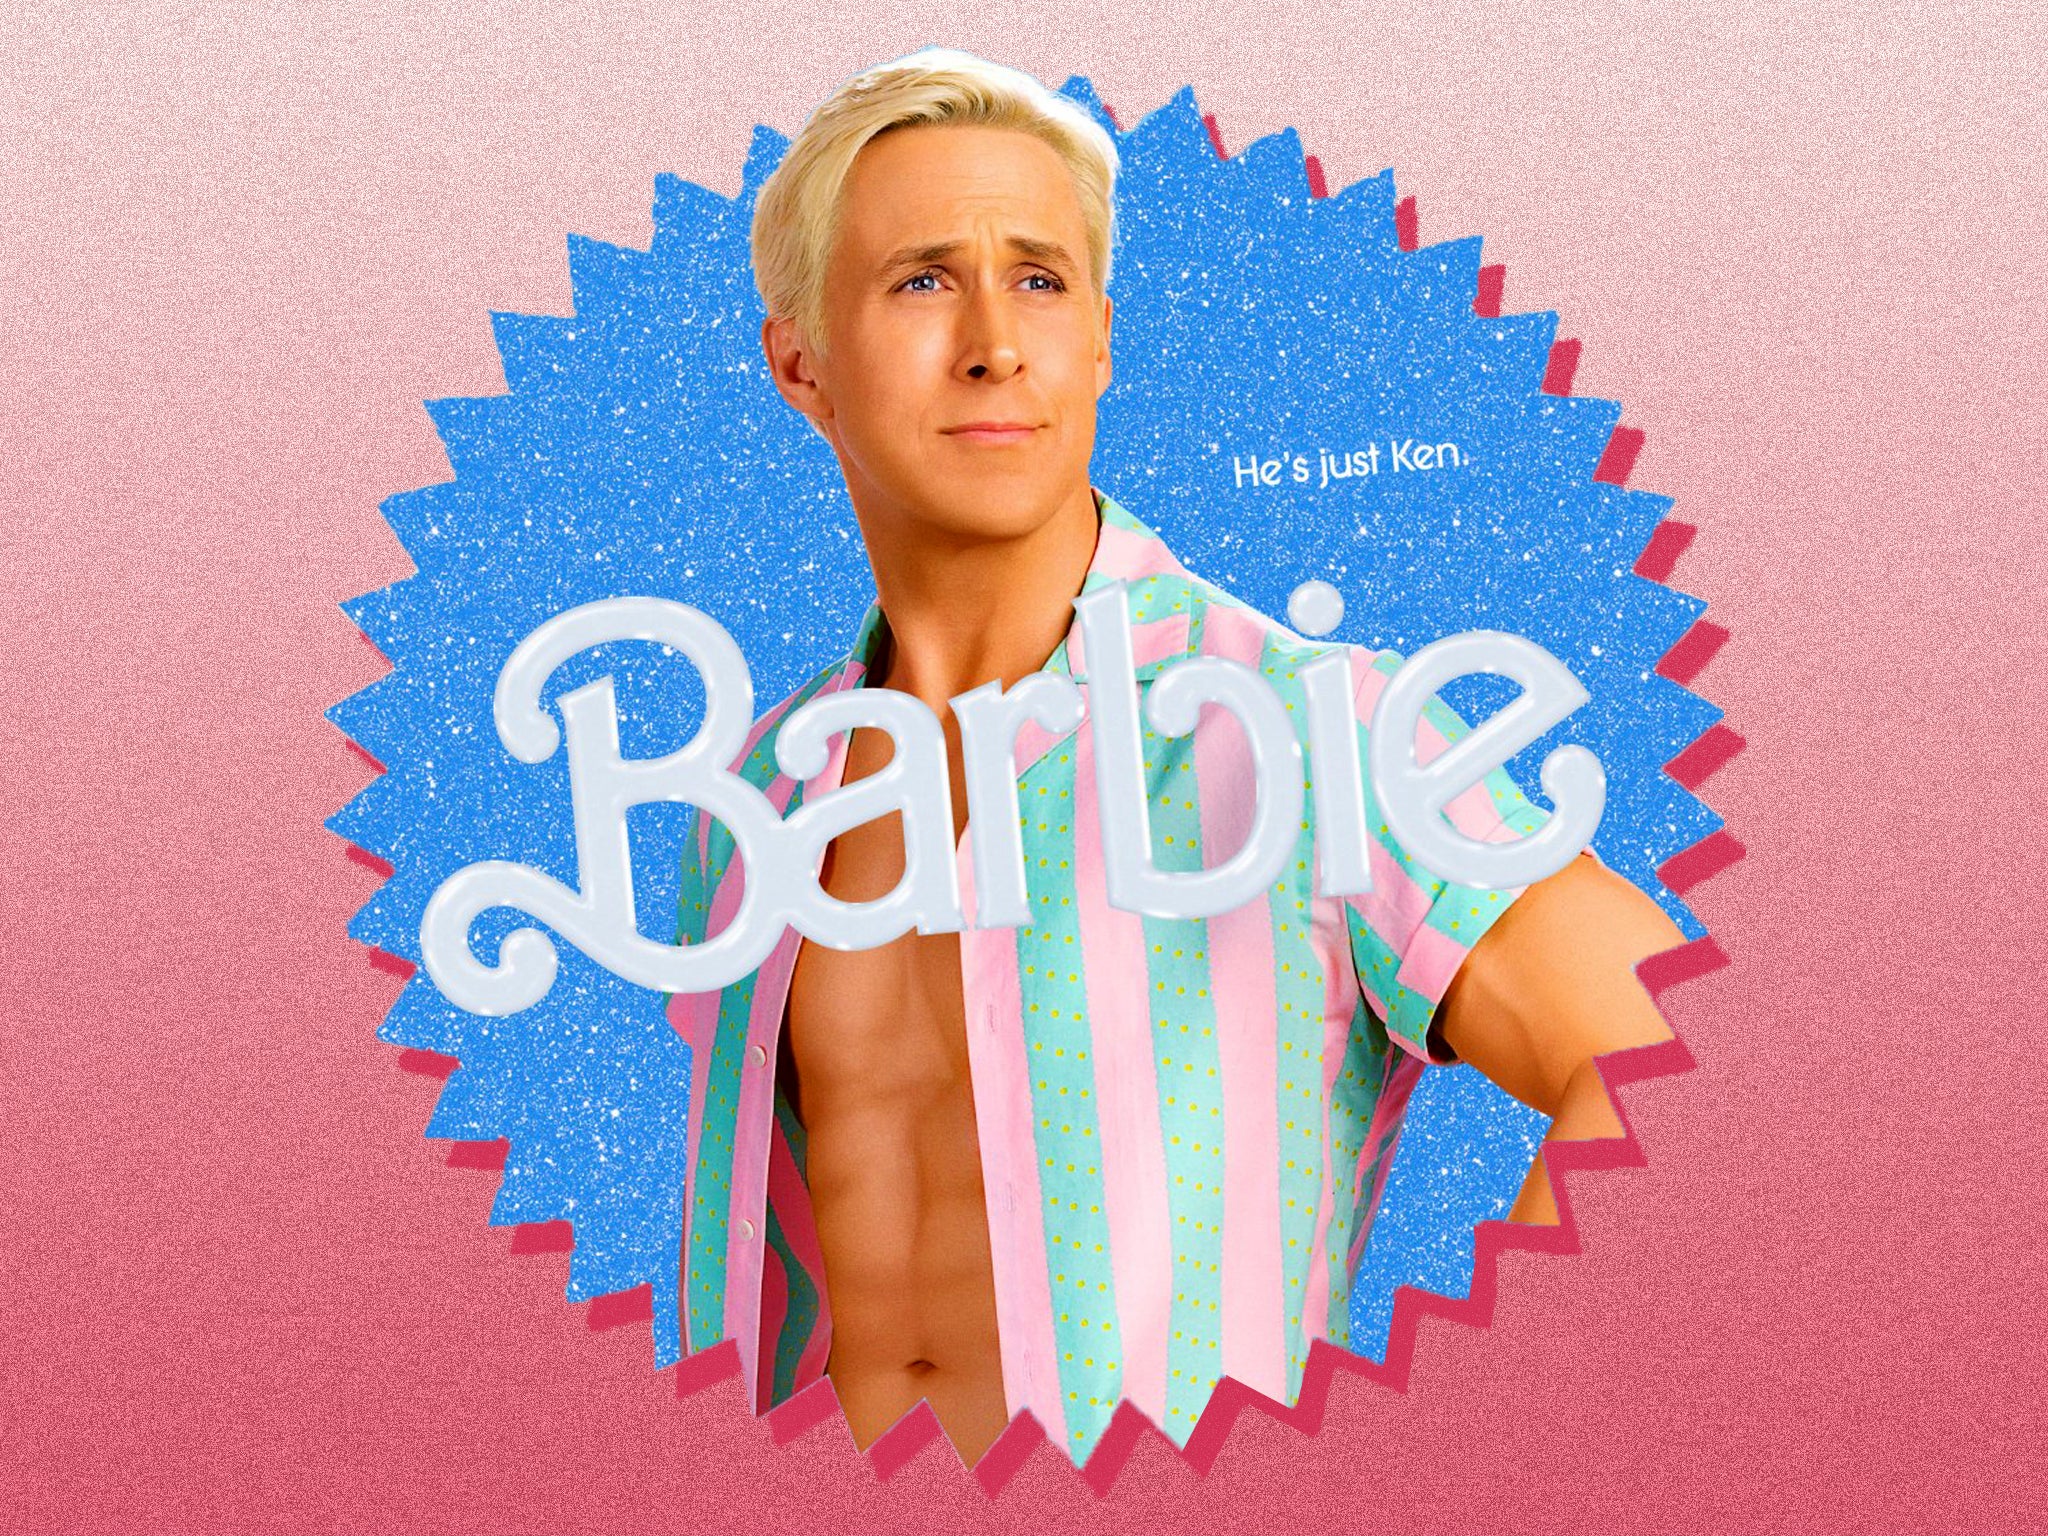 Barbie movie: Ryan Gosling's fake tan revealed